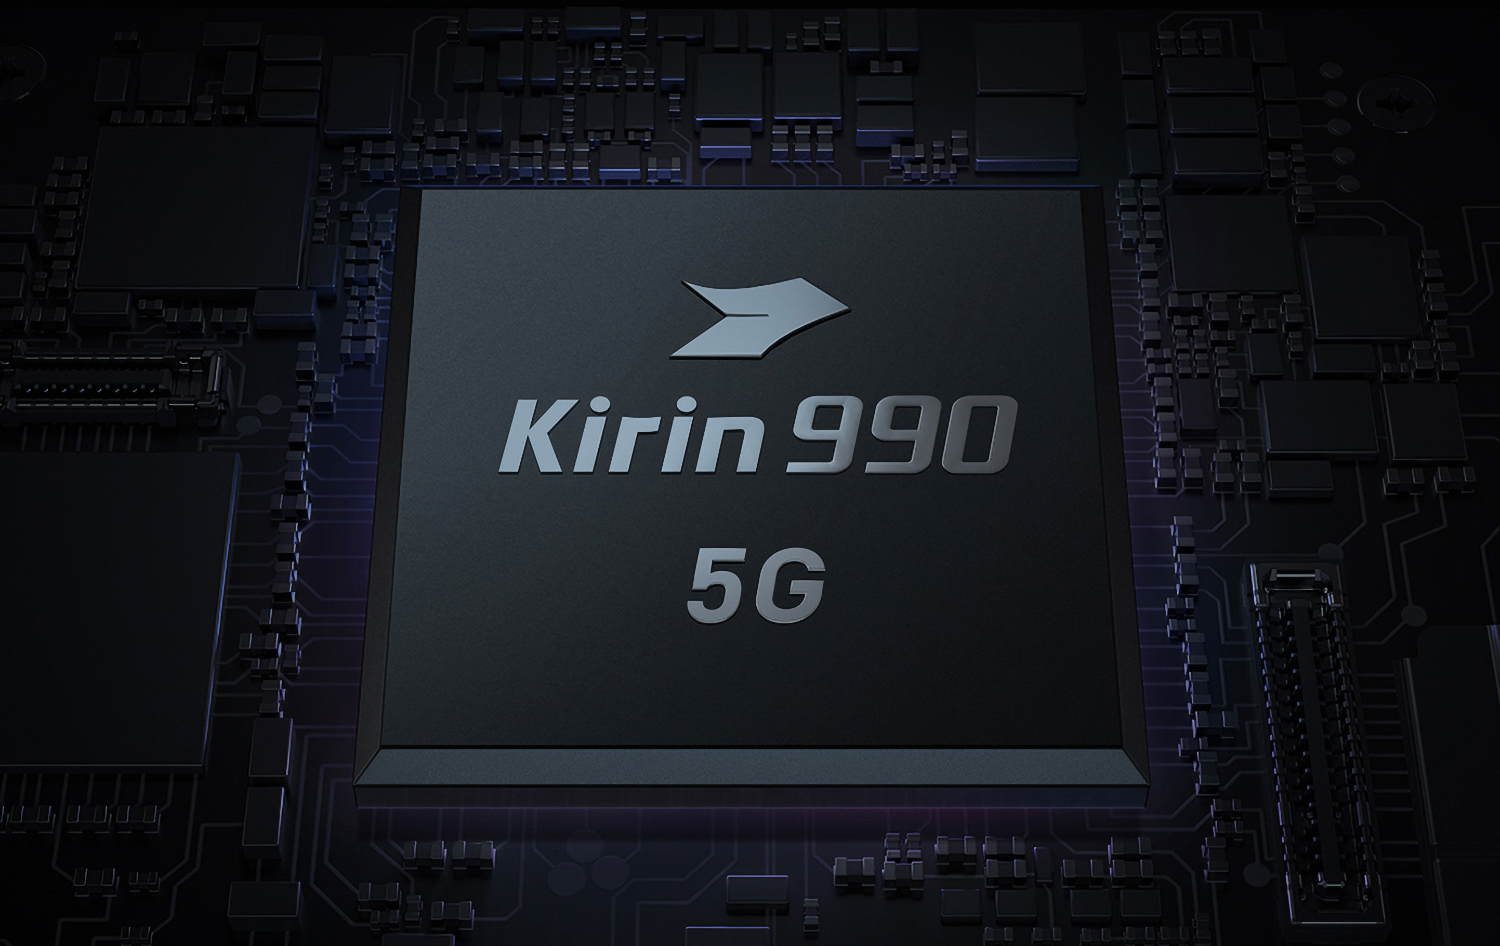 Санкции вынудили Huawei использовать процессоры Kirin, которые в 100 раз дороже решений конкурентов